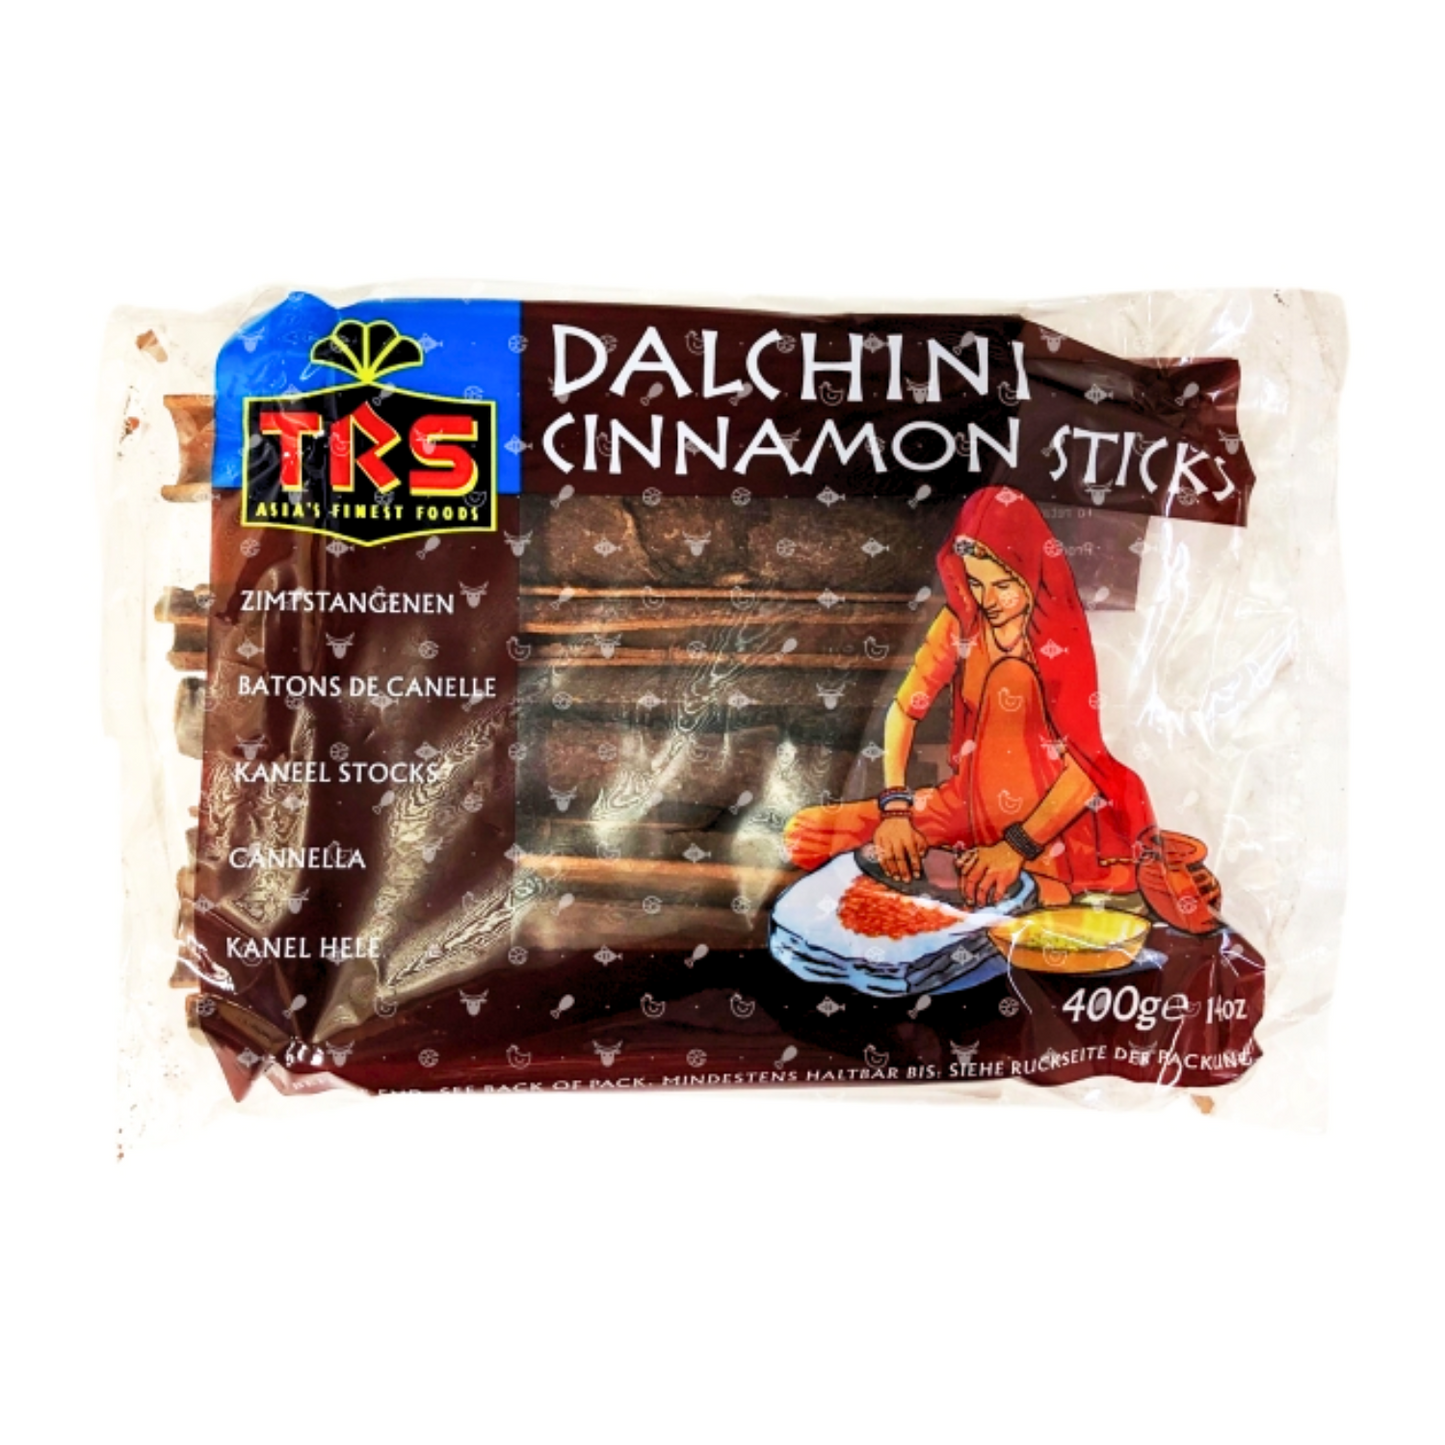 Dalchini (Cinnamon Sticks) 400g